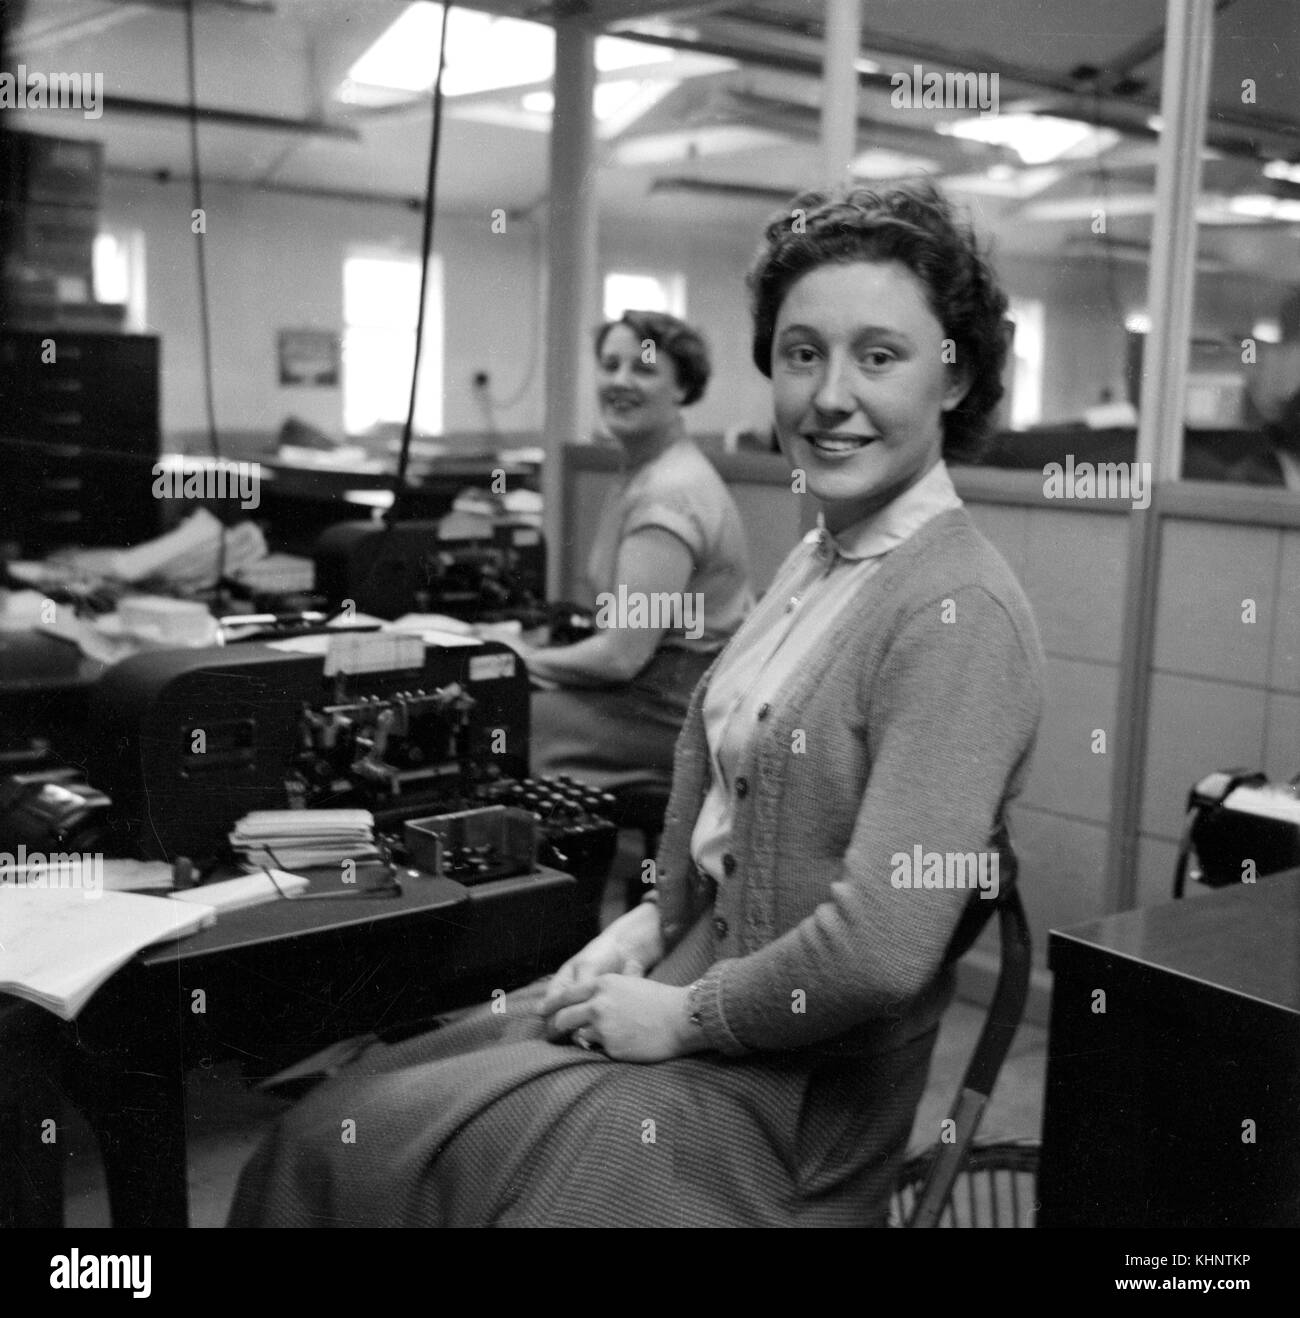 Les femmes service de comptabilité au bureau grâce à contrôler des machines. c1950 Photographie par Tony henshaw Banque D'Images